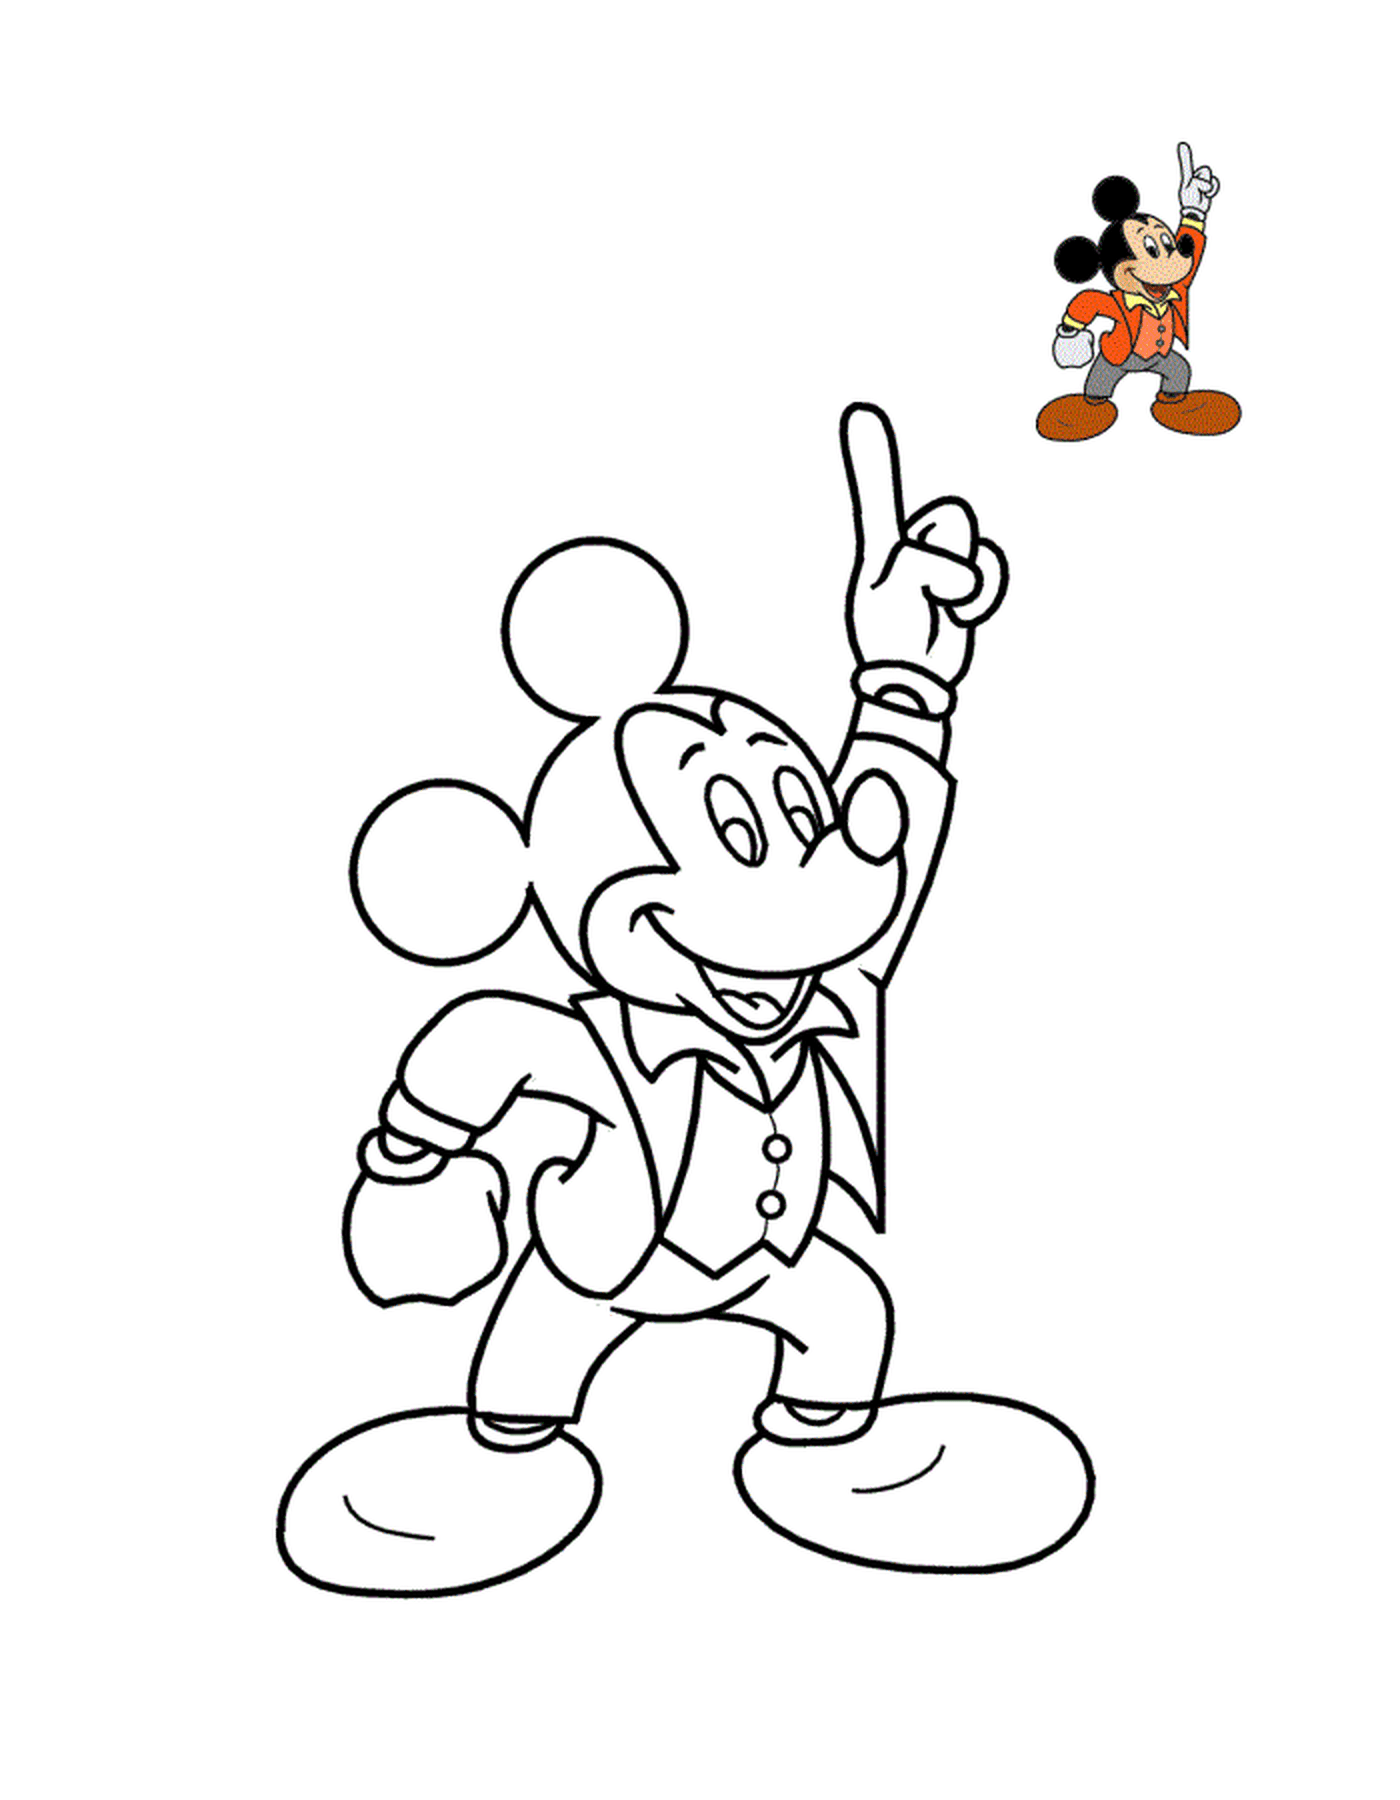  Mickey Mouse, una estrella del cómic 